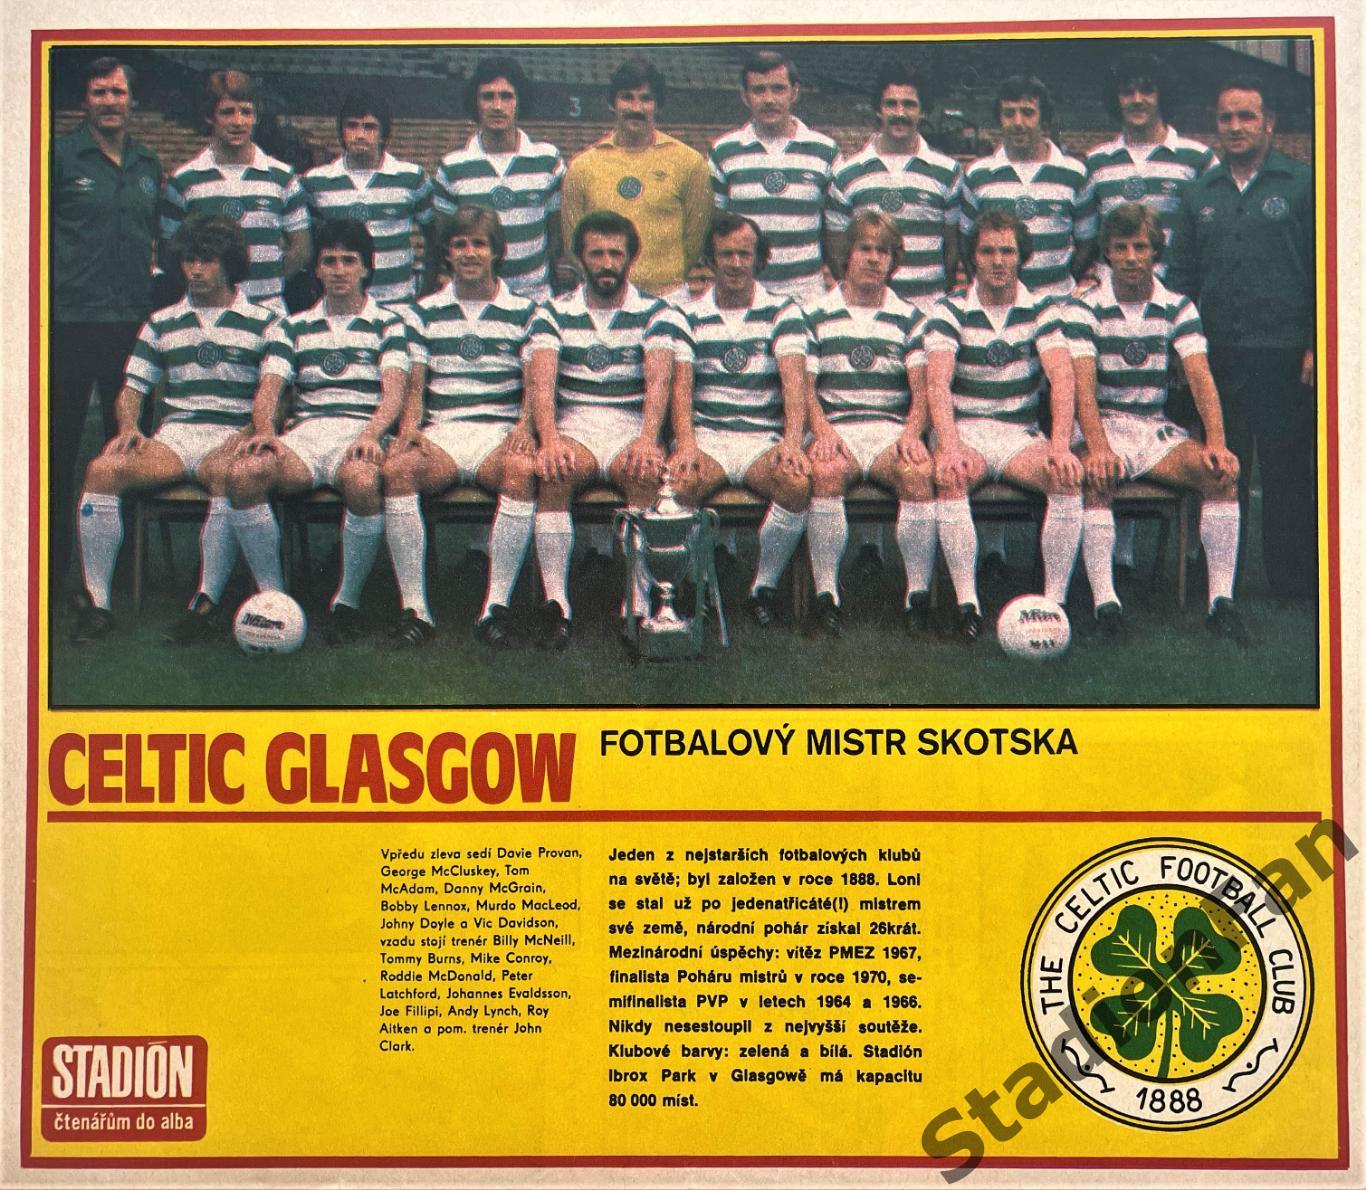 Постер из журнала Стадион (Stadion) - Celtic Glasgow, 1980.